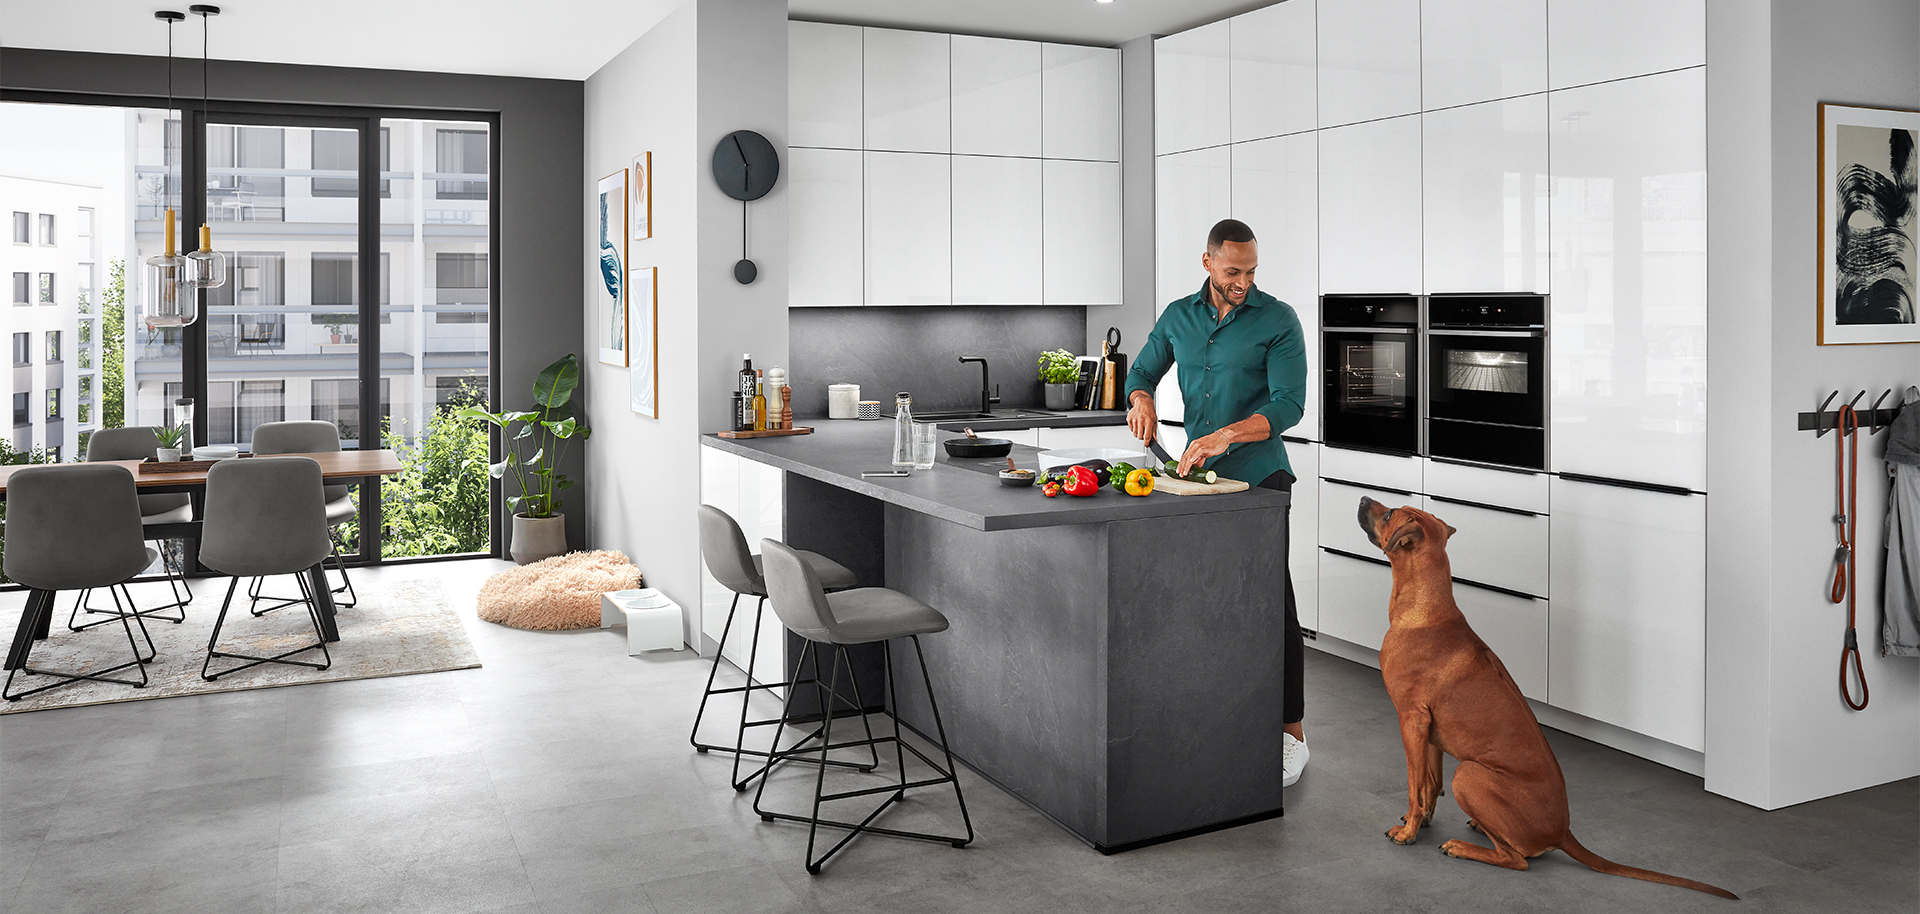 Una escena de cocina moderna y elegante que muestra a un hombre preparando comida en una isla con un perro observando, reflejando un estilo de vida hogareño cómodo y contemporáneo.